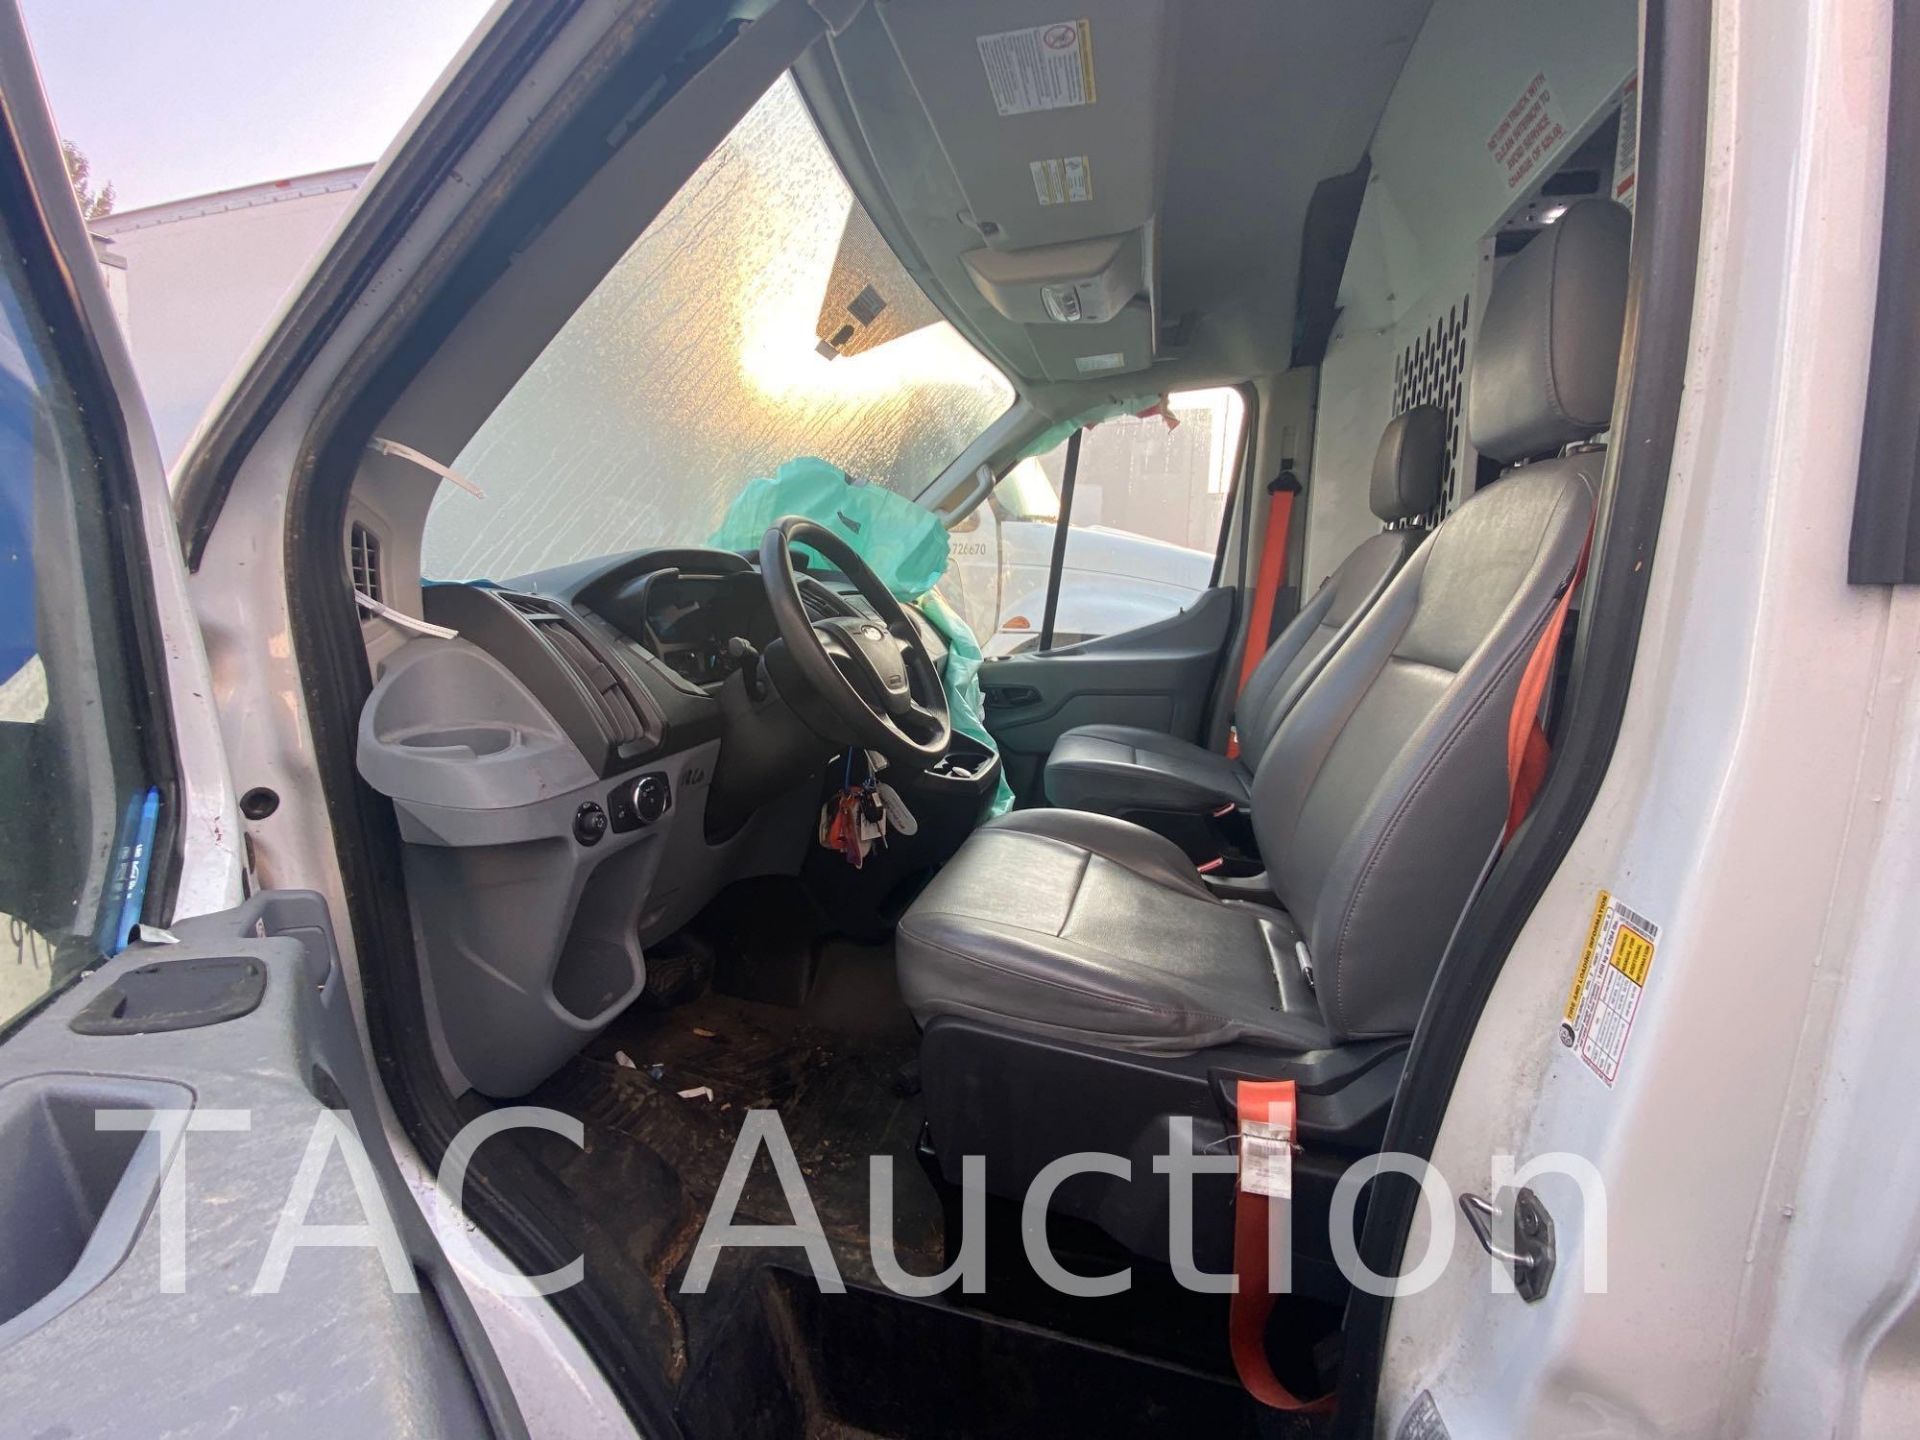 2019 Ford Transit 150 Cargo Van - Image 17 of 66